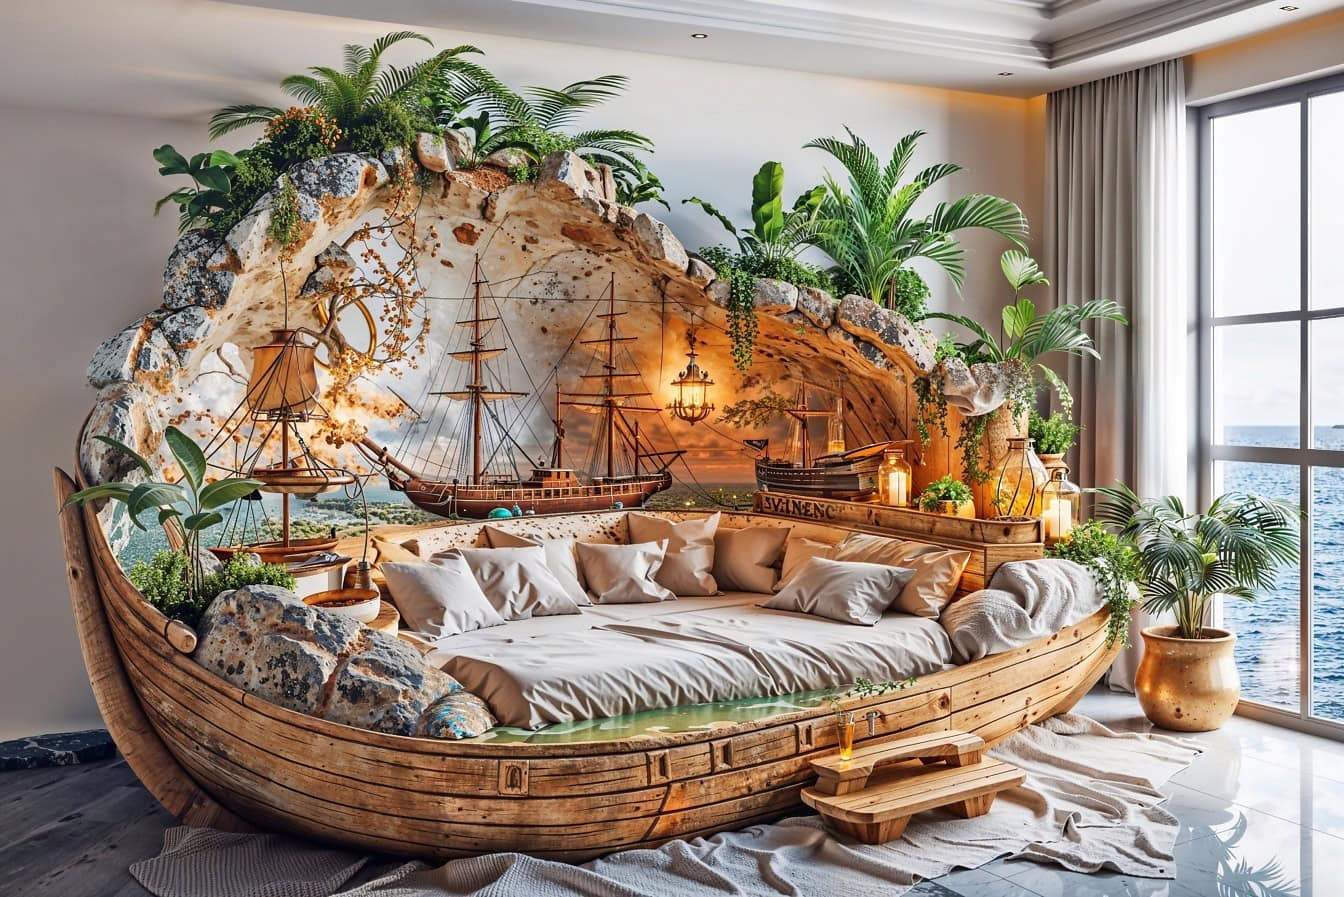 Ρουστίκ κρεβάτι σε ναυτικό στυλ σε υπνοδωμάτιο μποέμ καπετάνιου